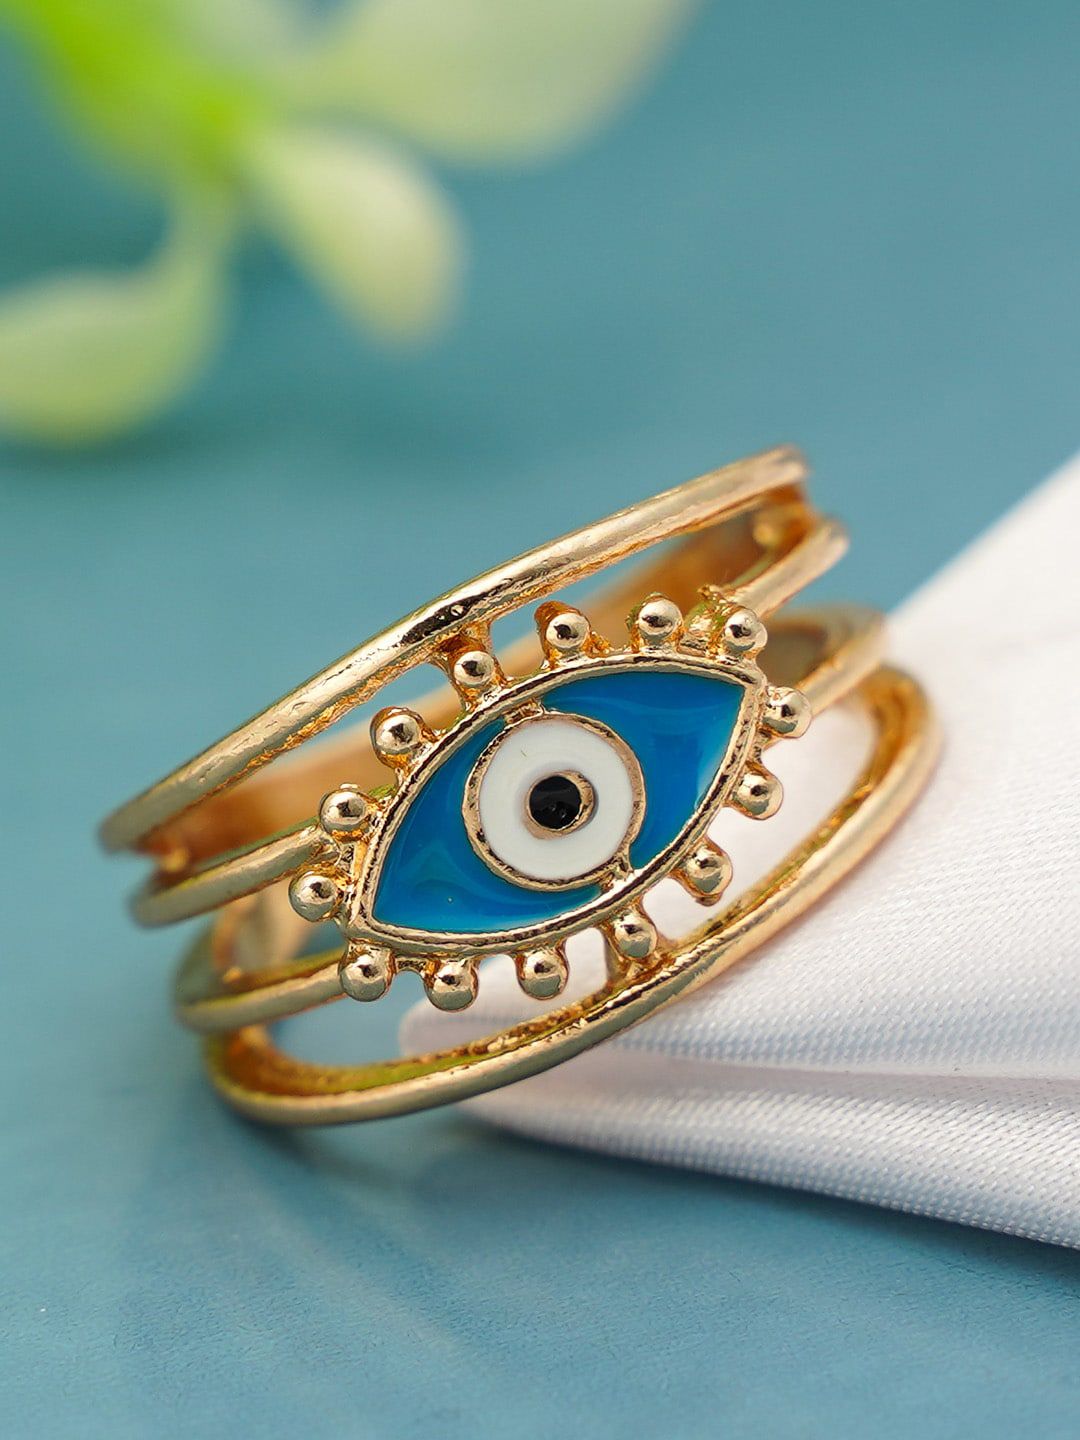 Ferosh Women Blue Evil Eye Ring Price in India